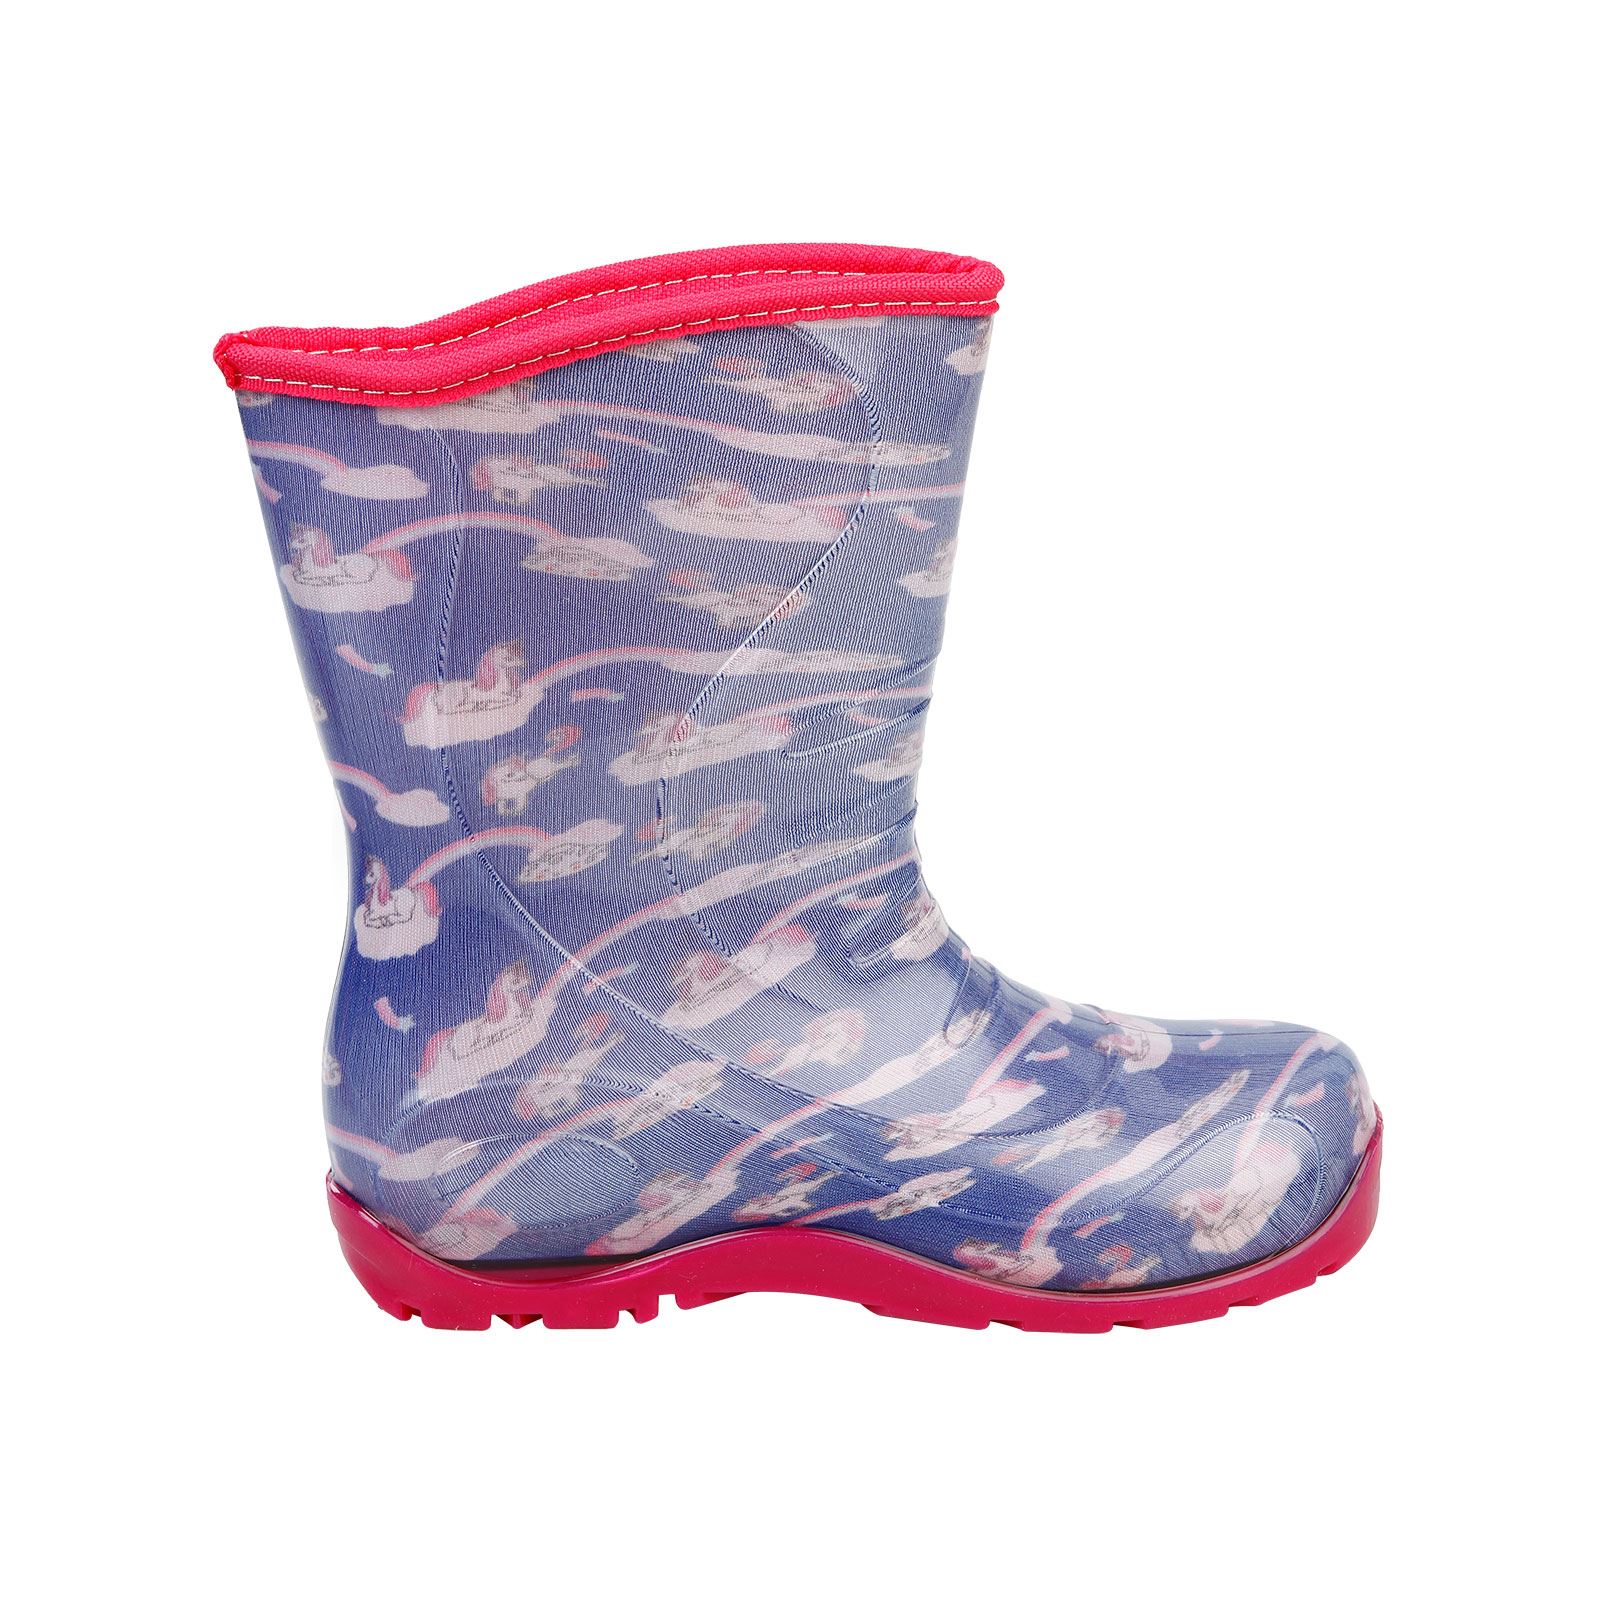 Boots Kız Çocuk Kedi Baskılı Yağmur Çizmesi 30-34 Numara Mor